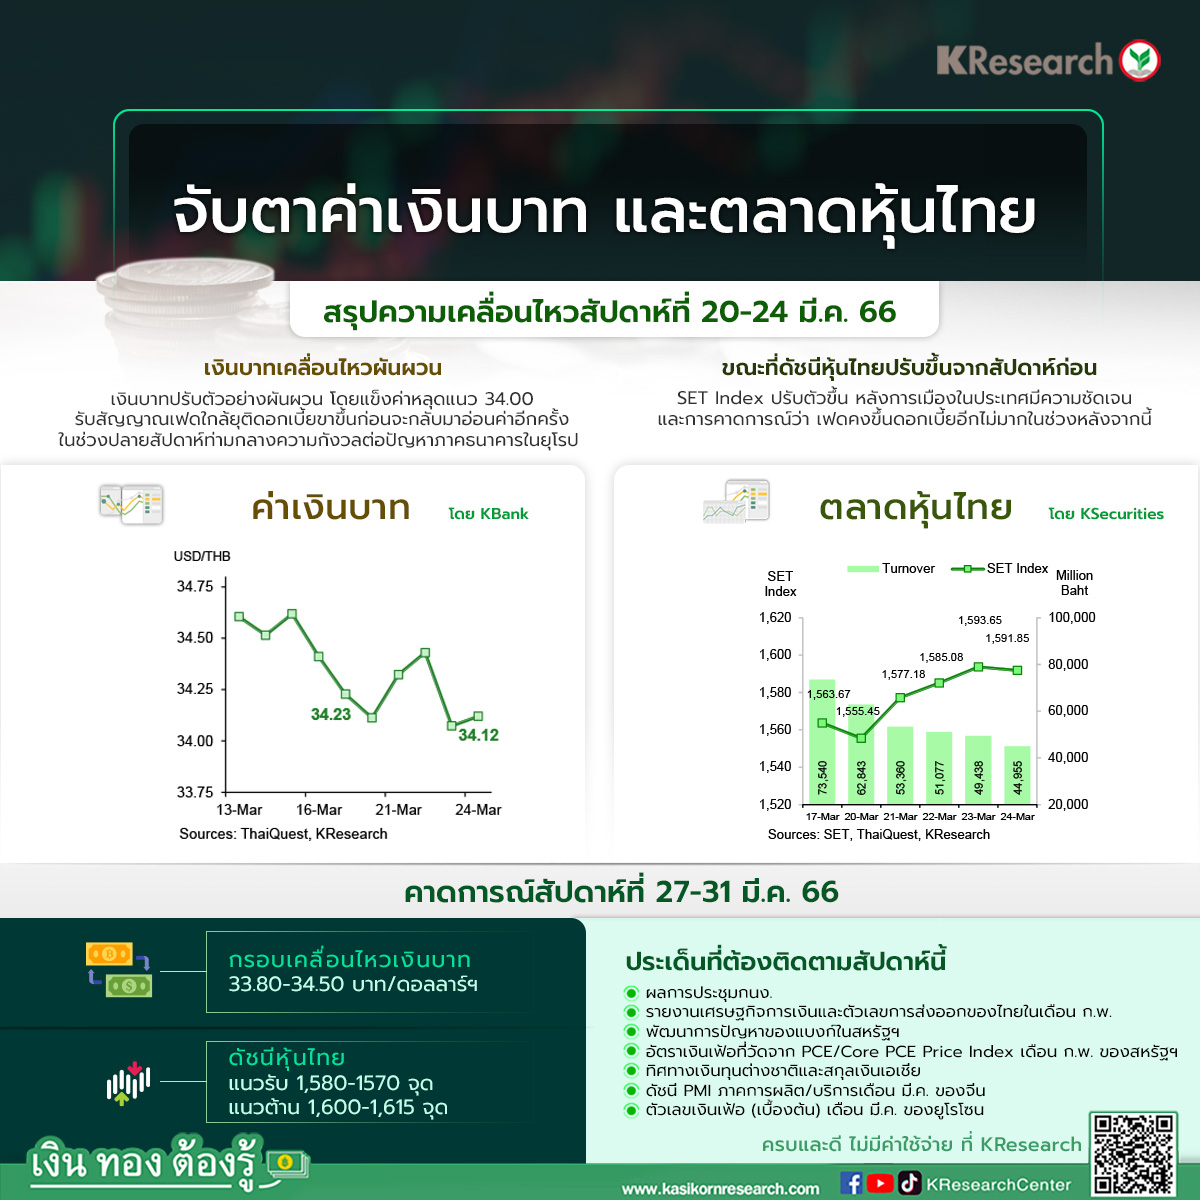 ค่าเงินบาท และตลาดหุ้นไทย (สัปดาห์ที่ 20-24 มี.ค. 66) - ศูนย์วิจัยกสิกรไทย